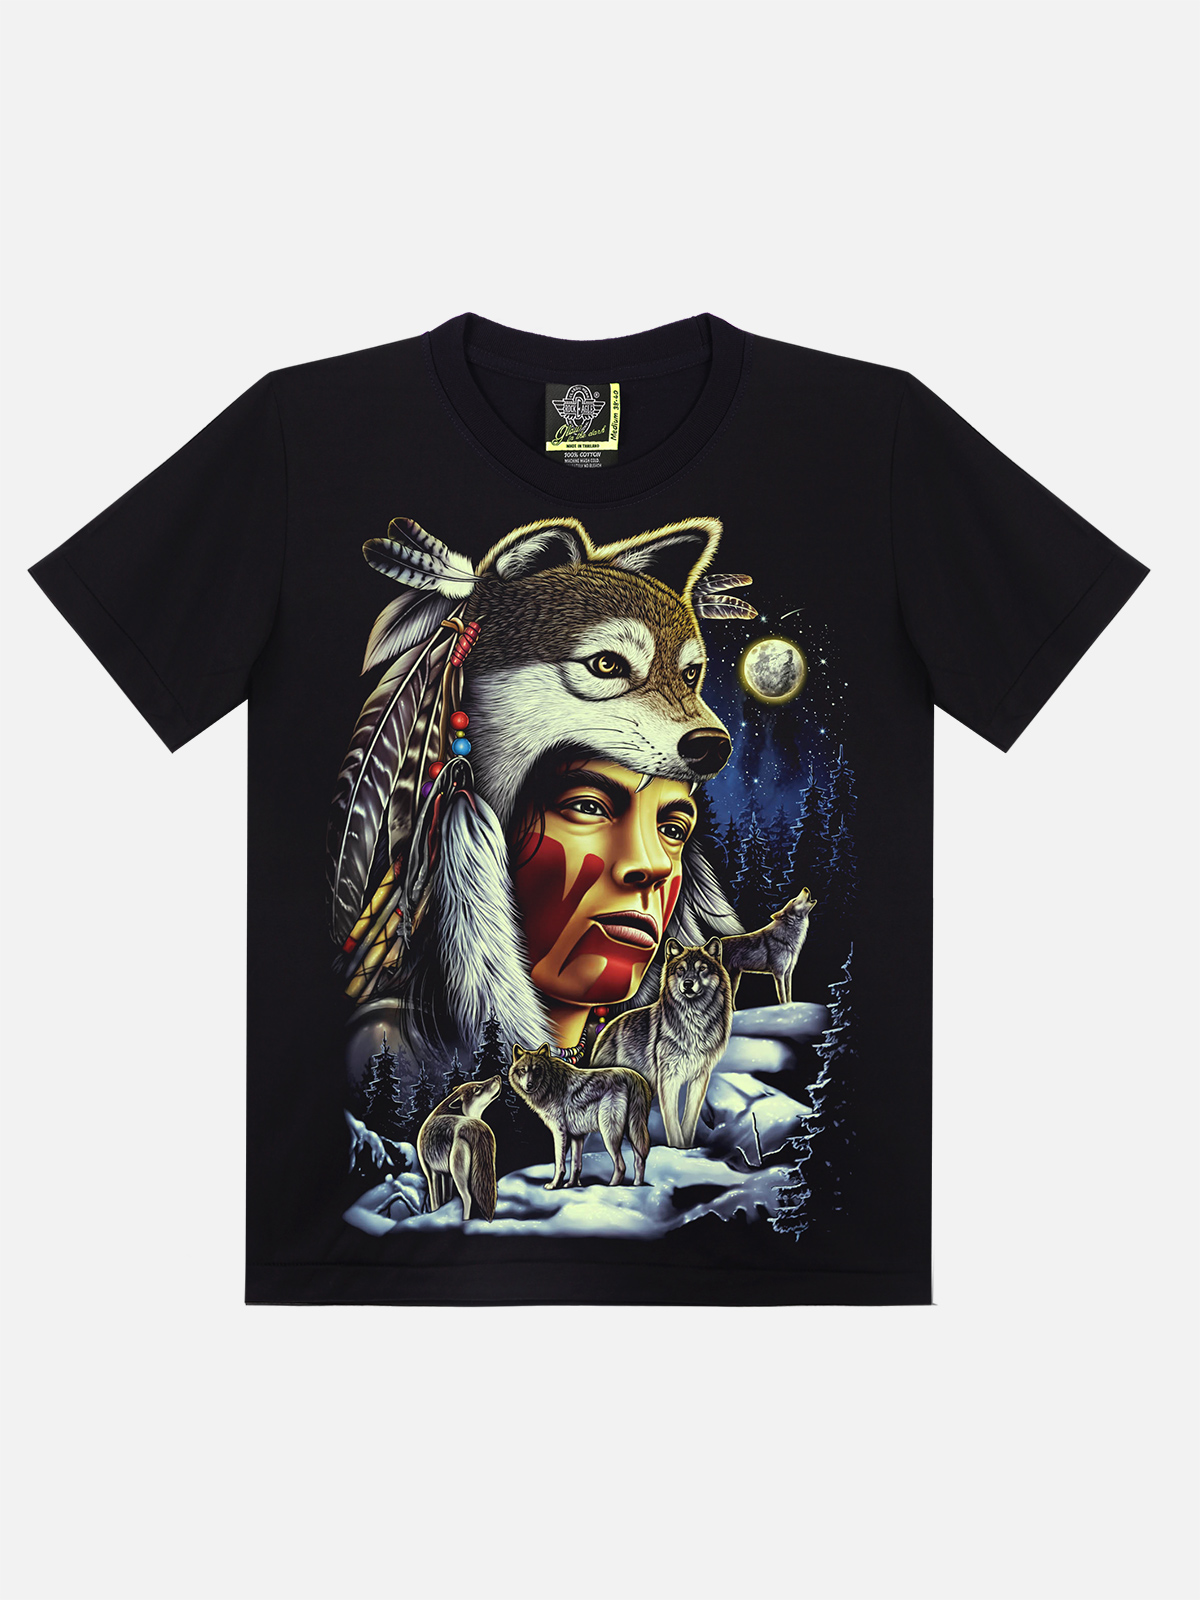 Gw-354 – Rock Eagle T-Shirts – Official Site